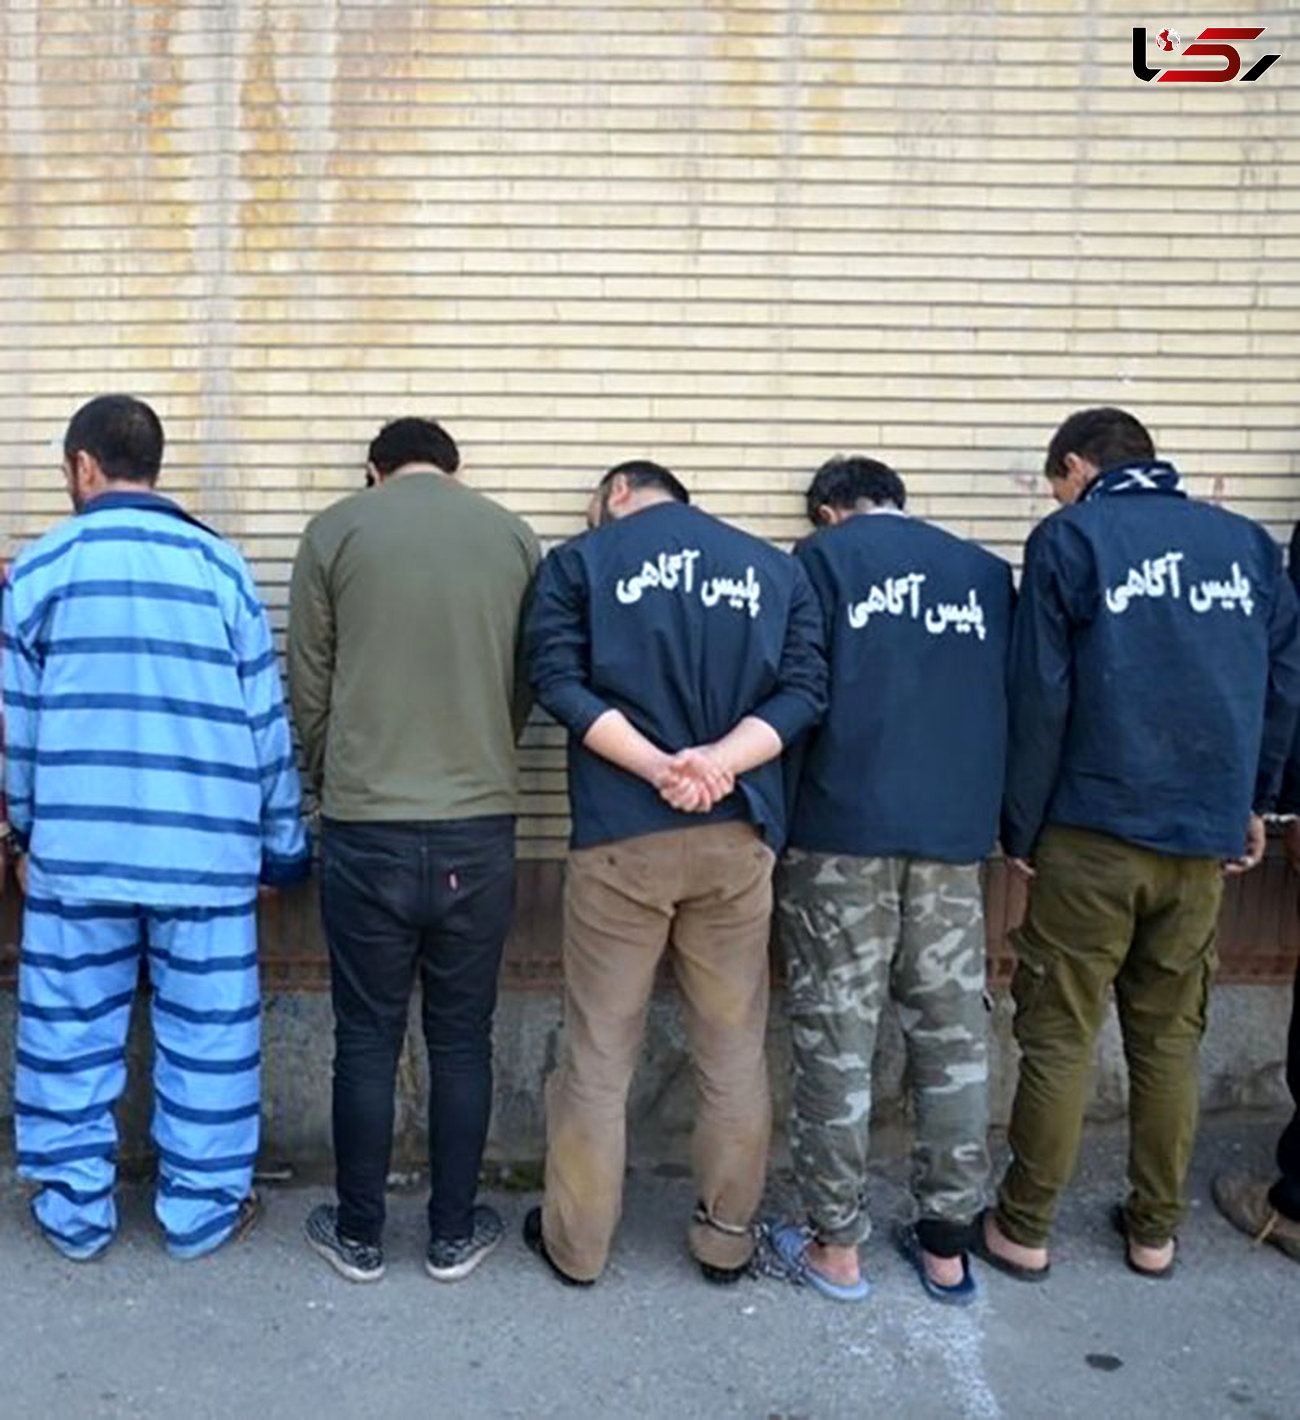 5 مرد خشن غرب تهران را آشفته کرده بودند / آنها با چاقو همه کار می کردند + عکس